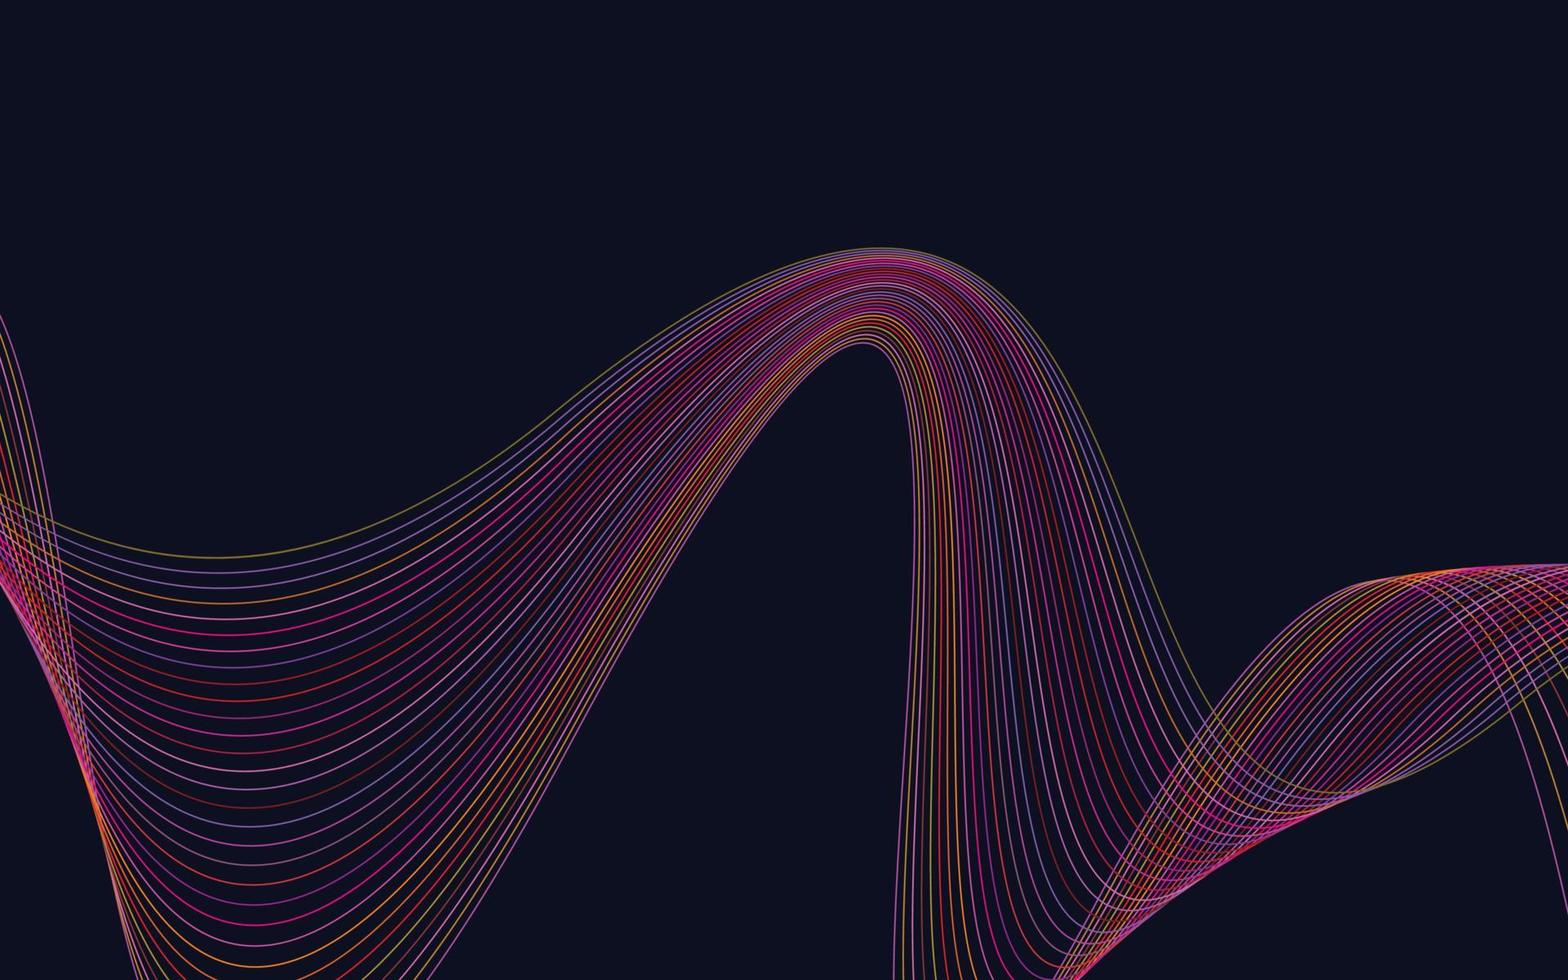 Welle der vielen farbigen Linien. abstrakter gewellter streifenhintergrund lokalisiert vektor